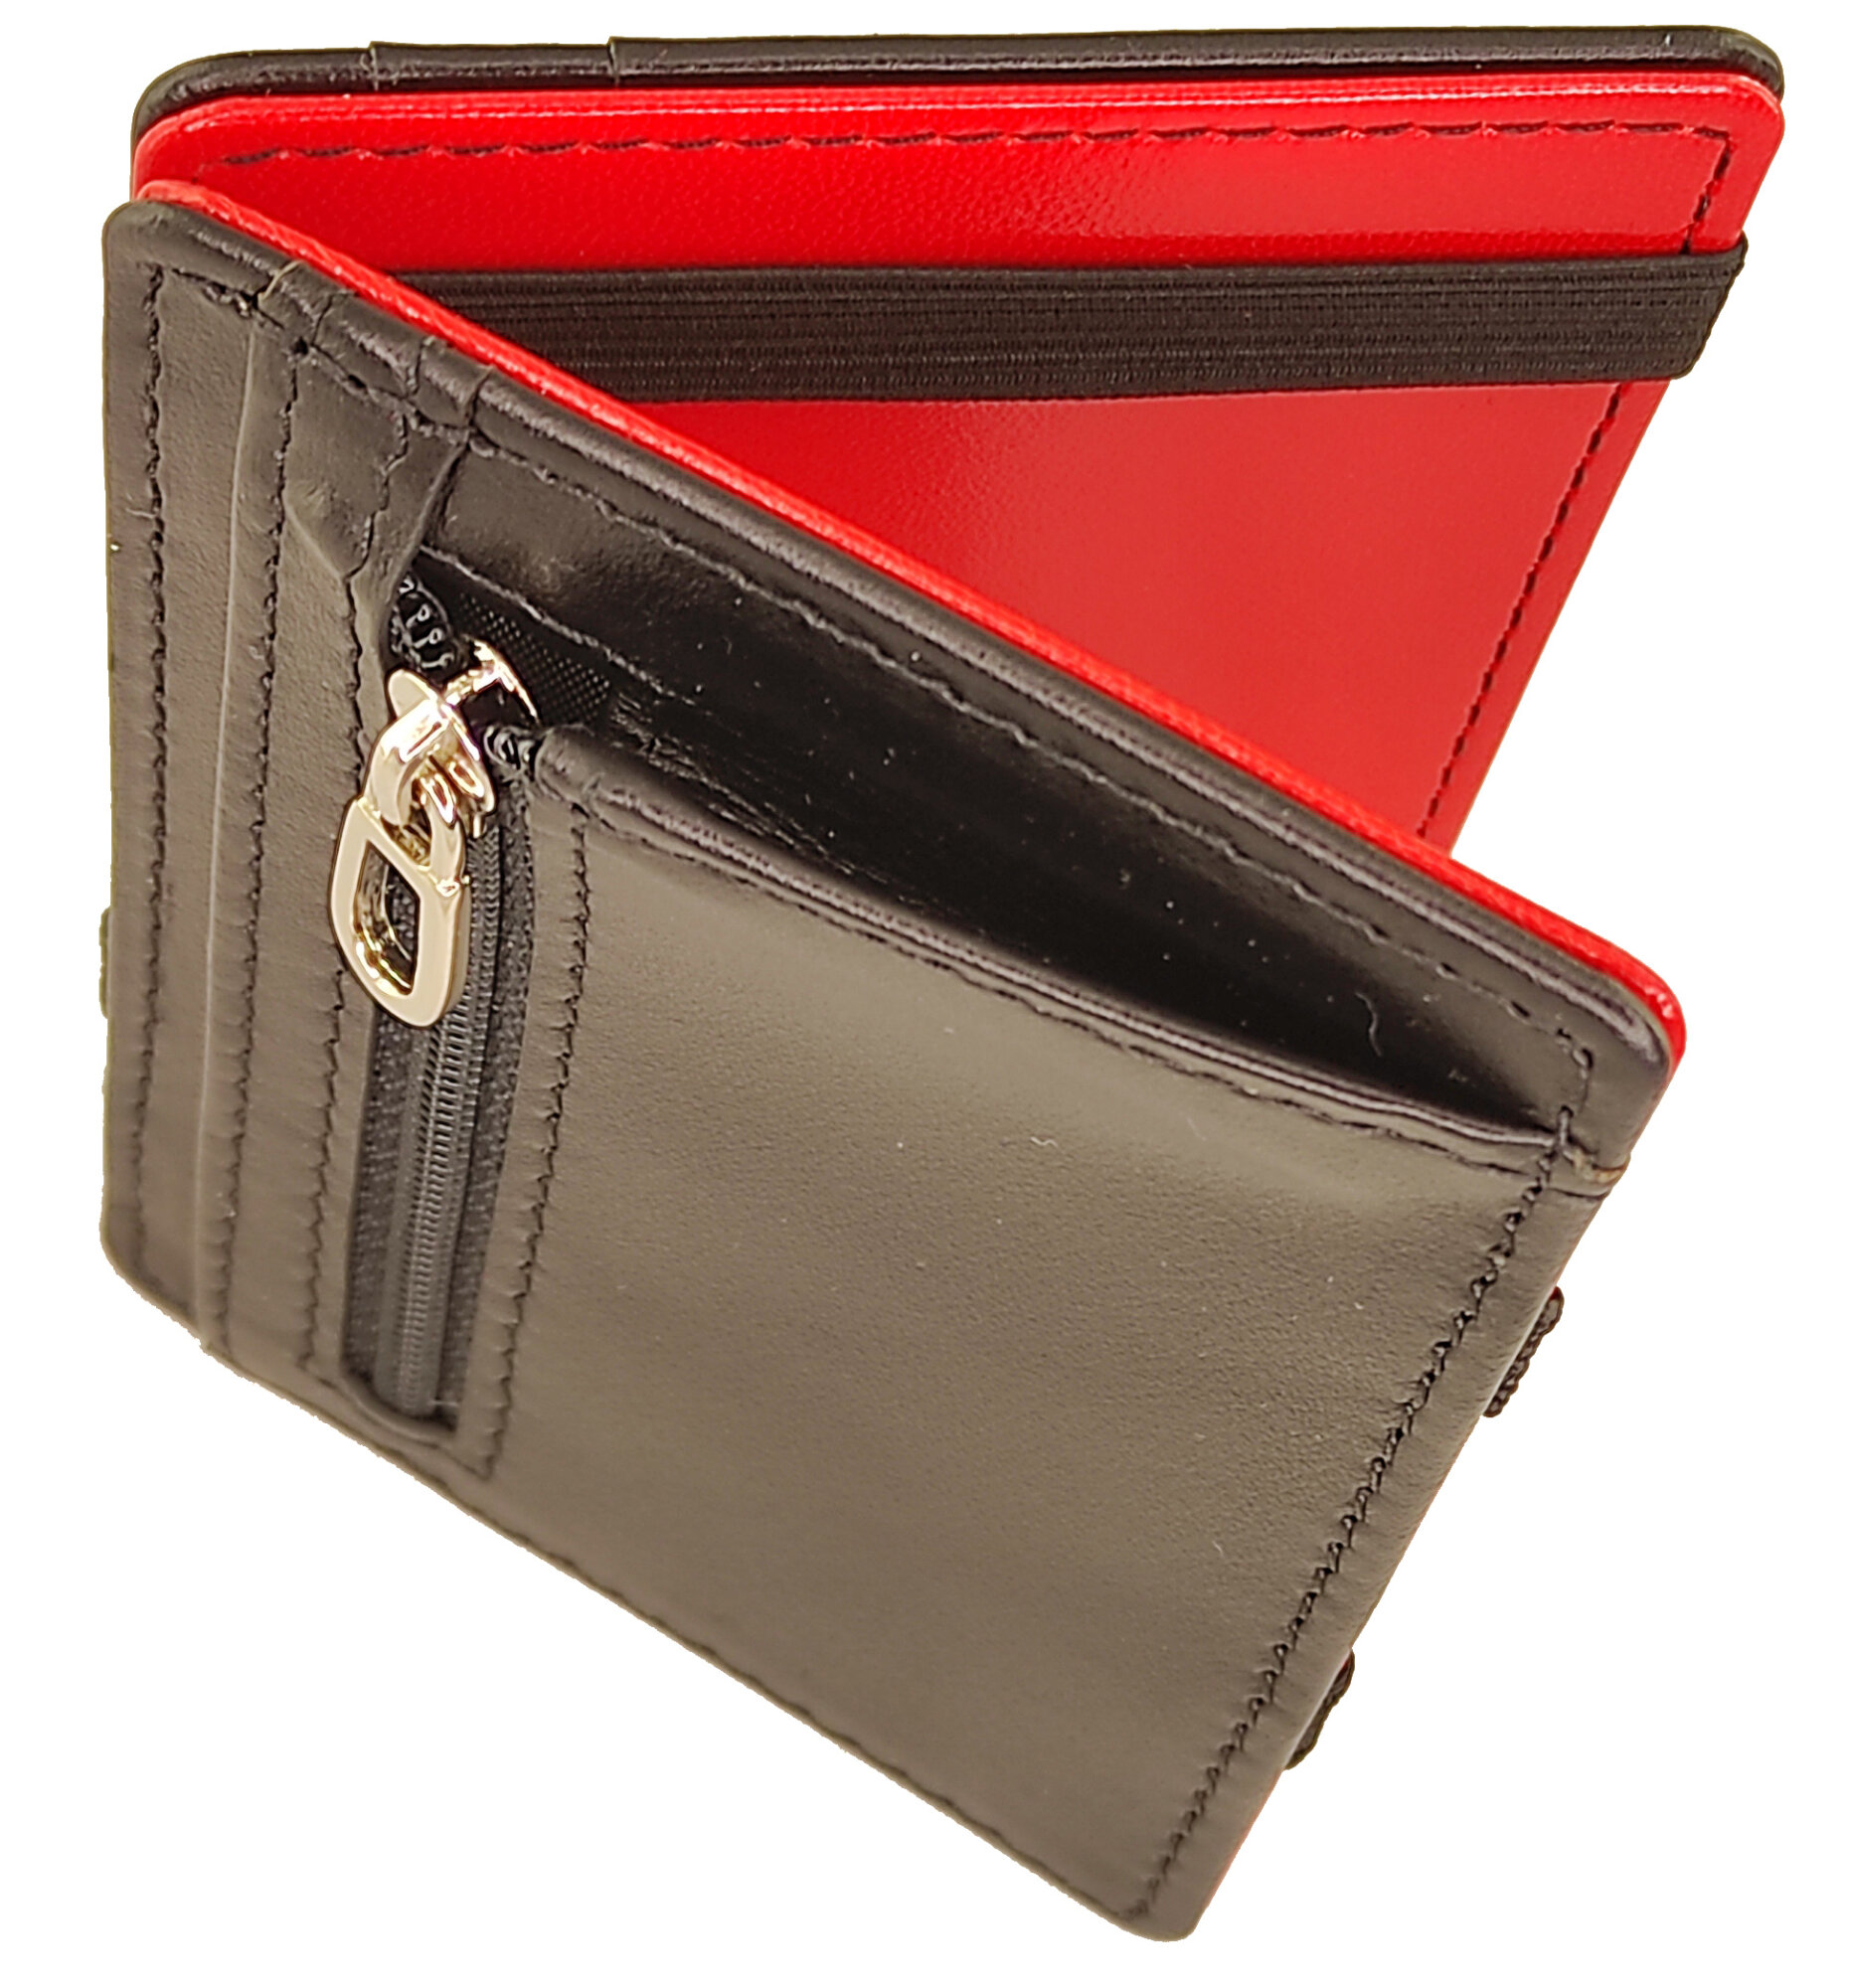 Кожаный компактный кошелек «Фолд Фото» Fold Photo с металлической фотокартой